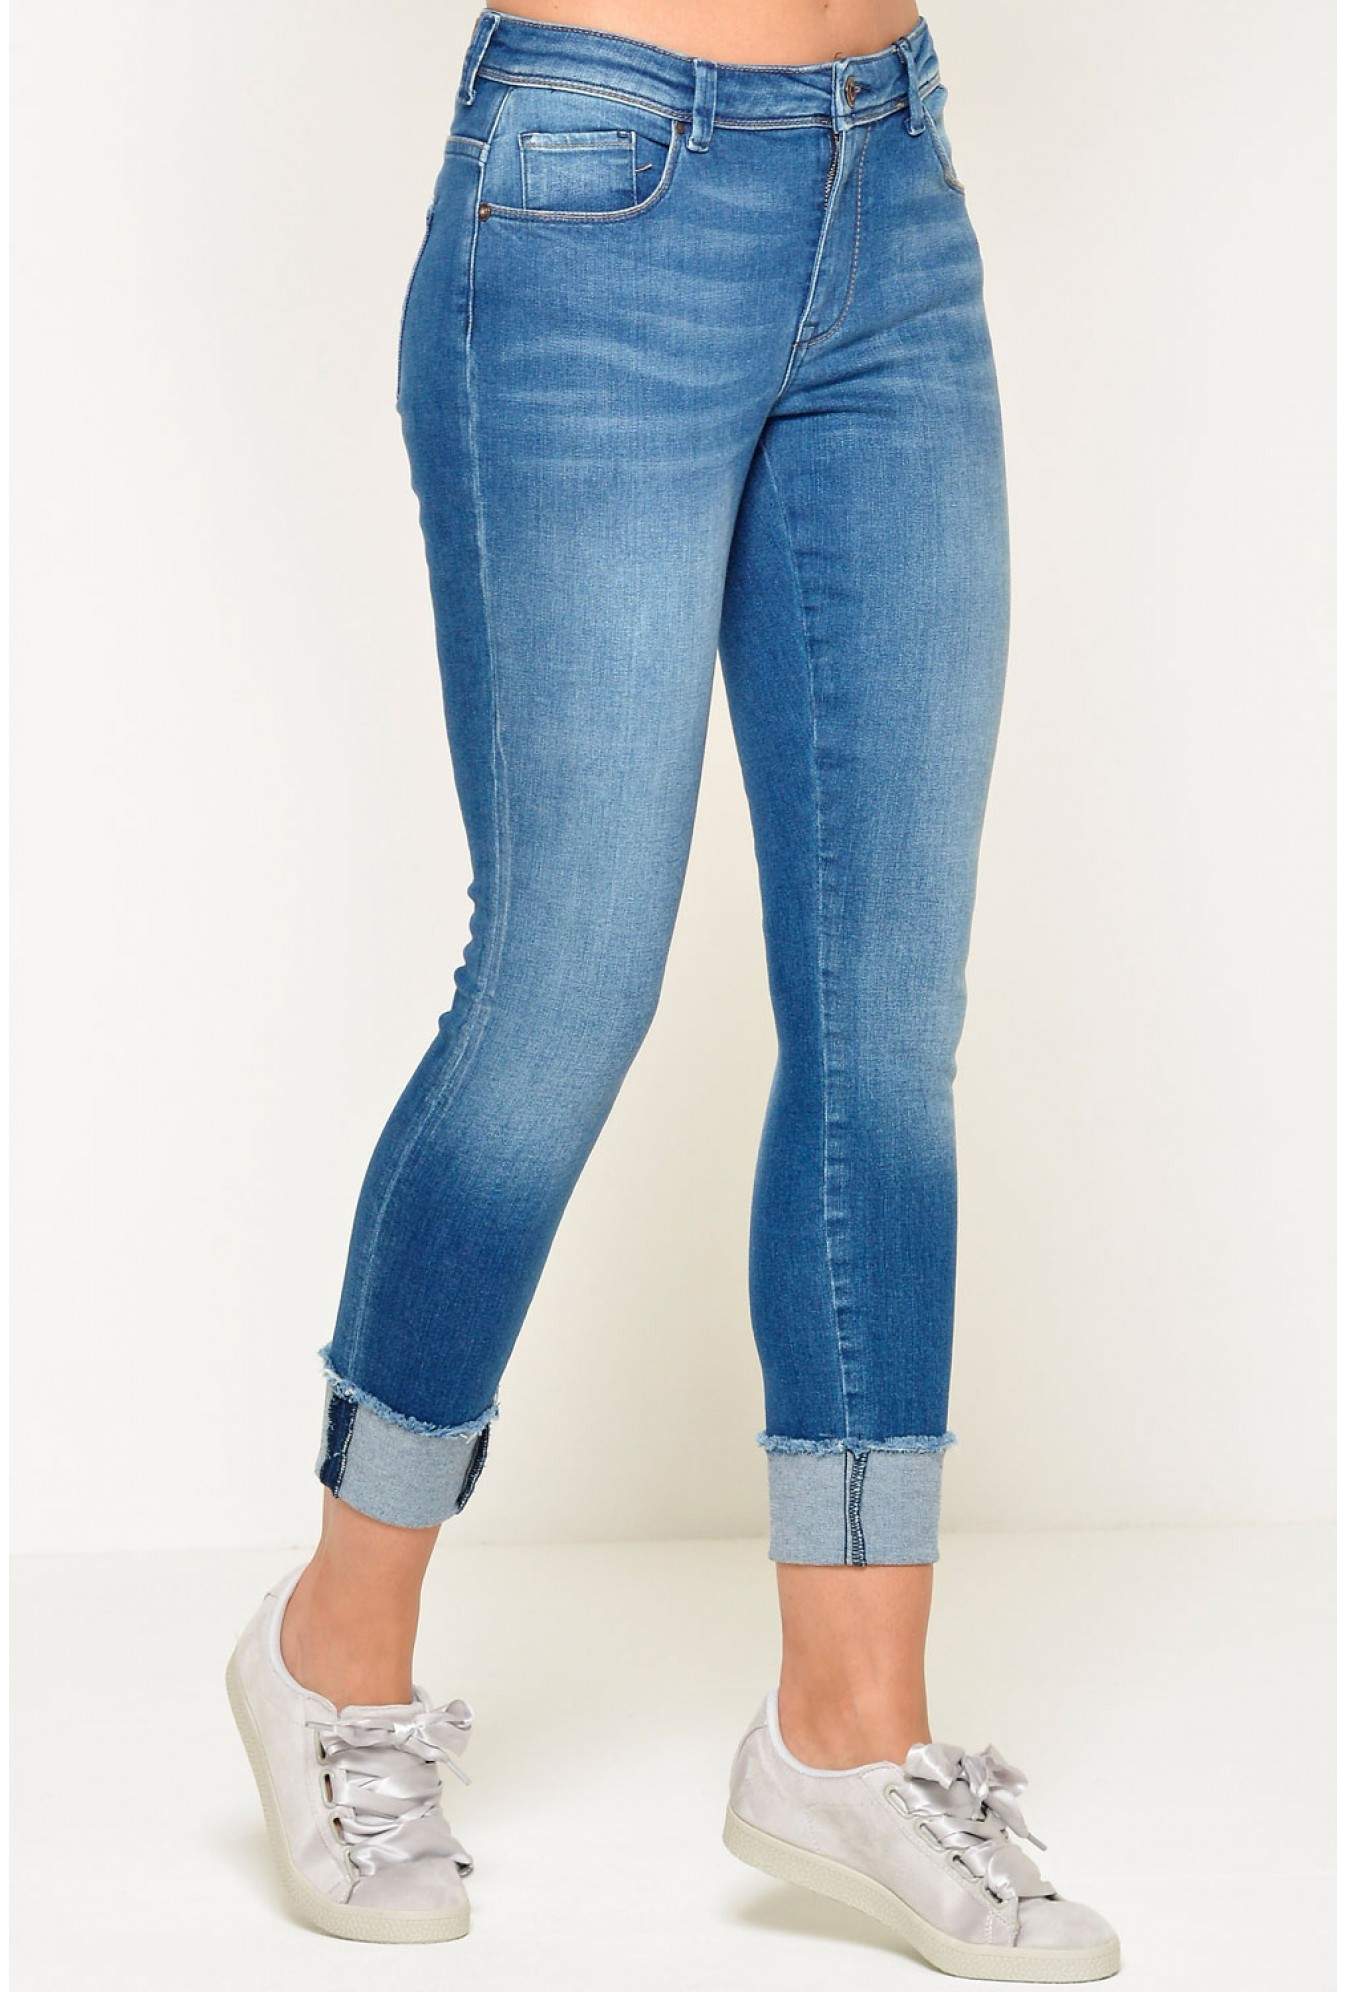 carmen regular skinny jeans